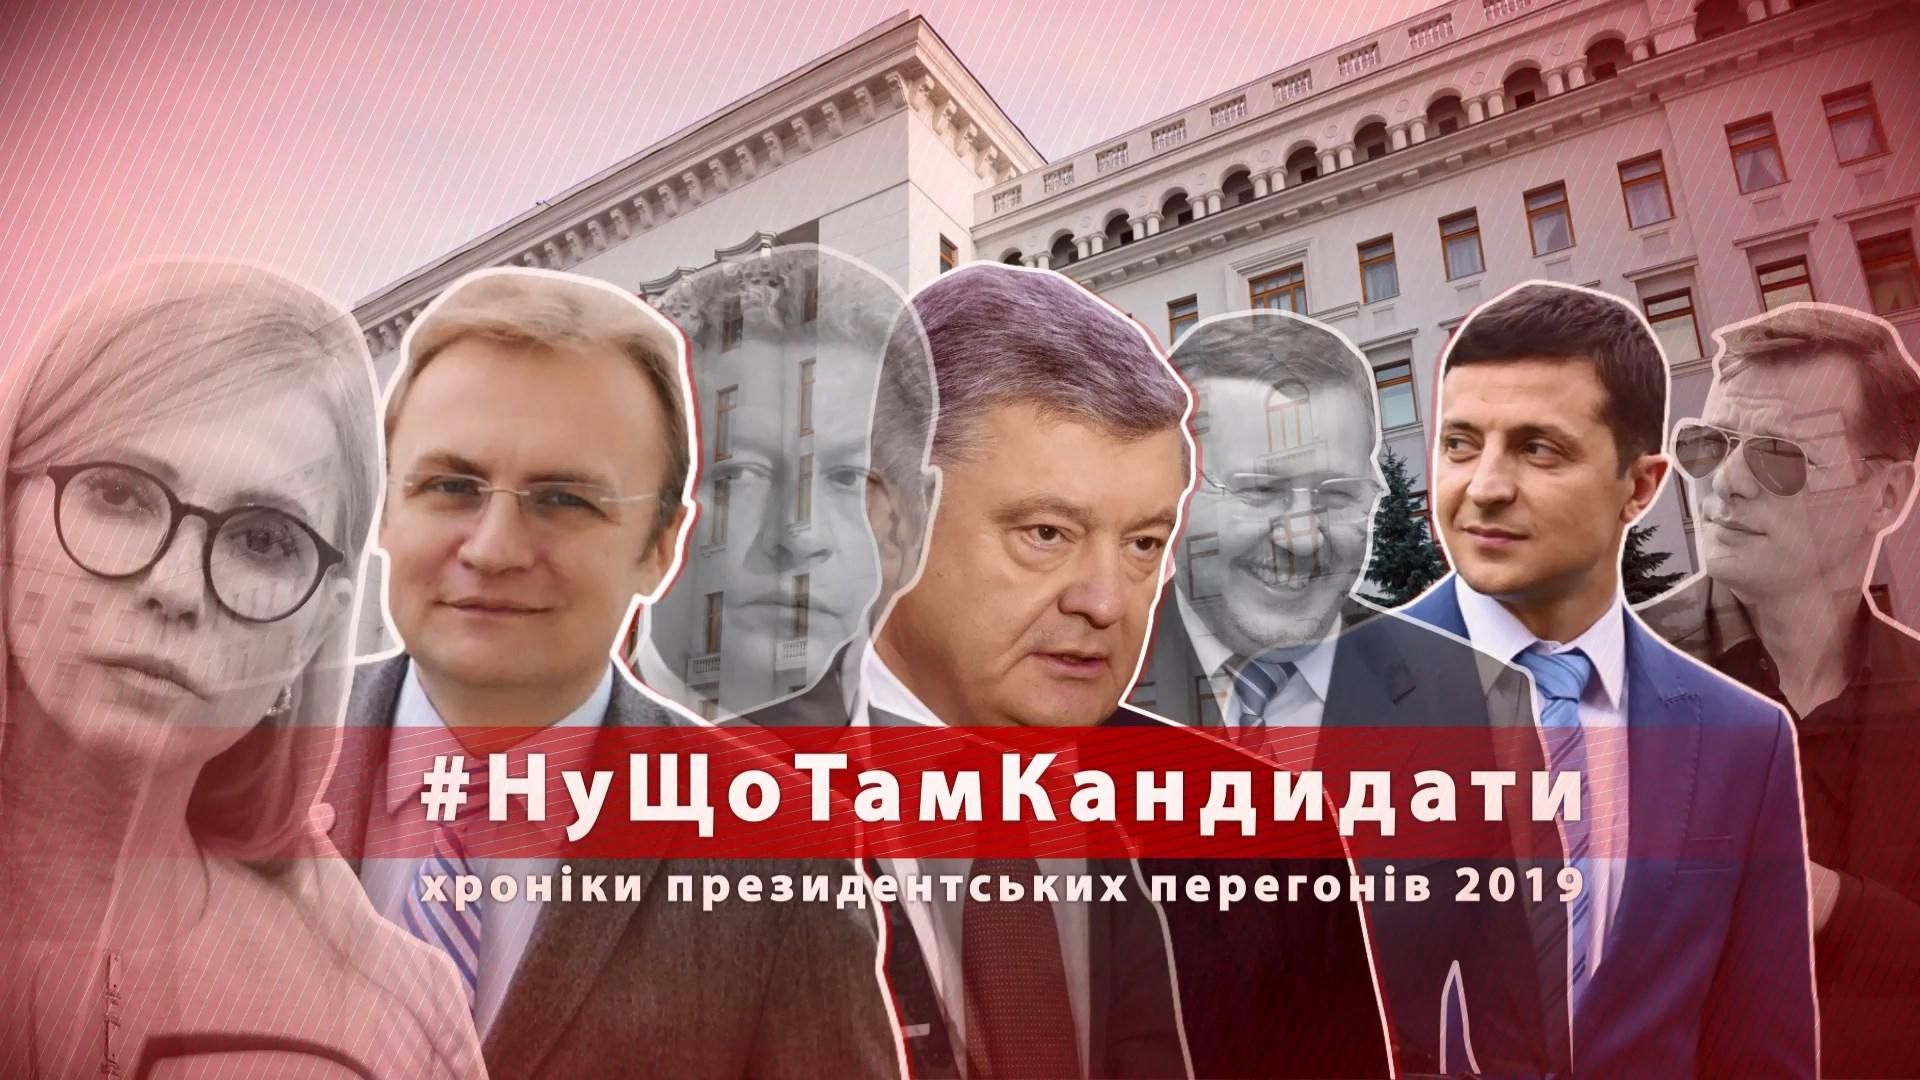 Хот-дог для Тимошенко та "ніякої агітації" за Зеленського: як політики привертають до себе увагу